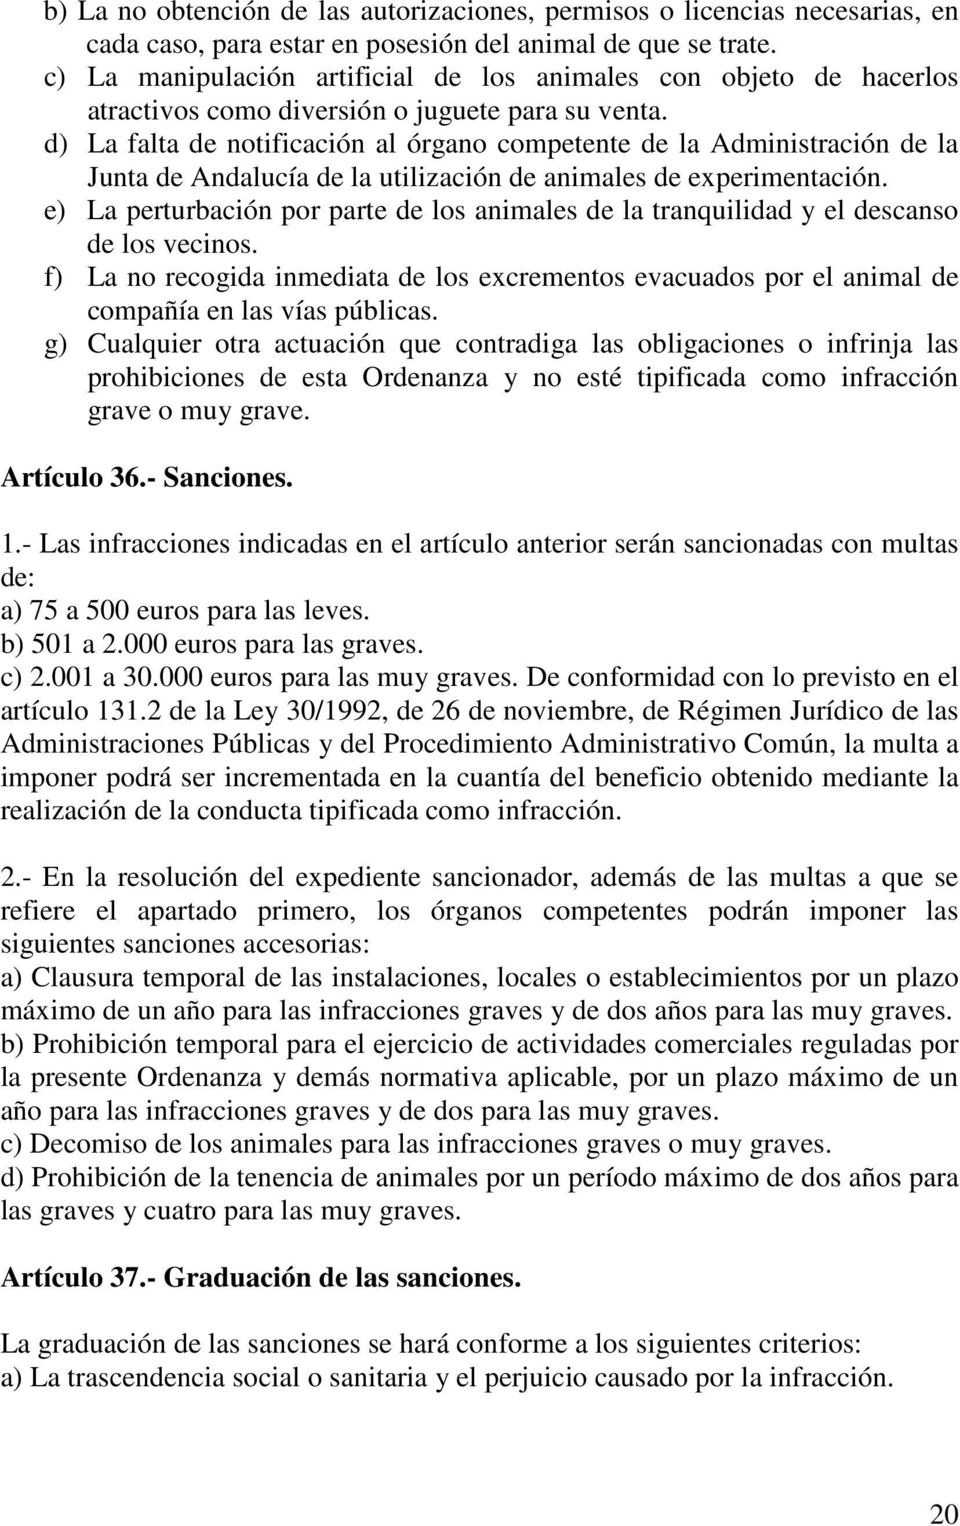 d) La falta de notificación al órgano competente de la Administración de la Junta de Andalucía de la utilización de animales de experimentación.